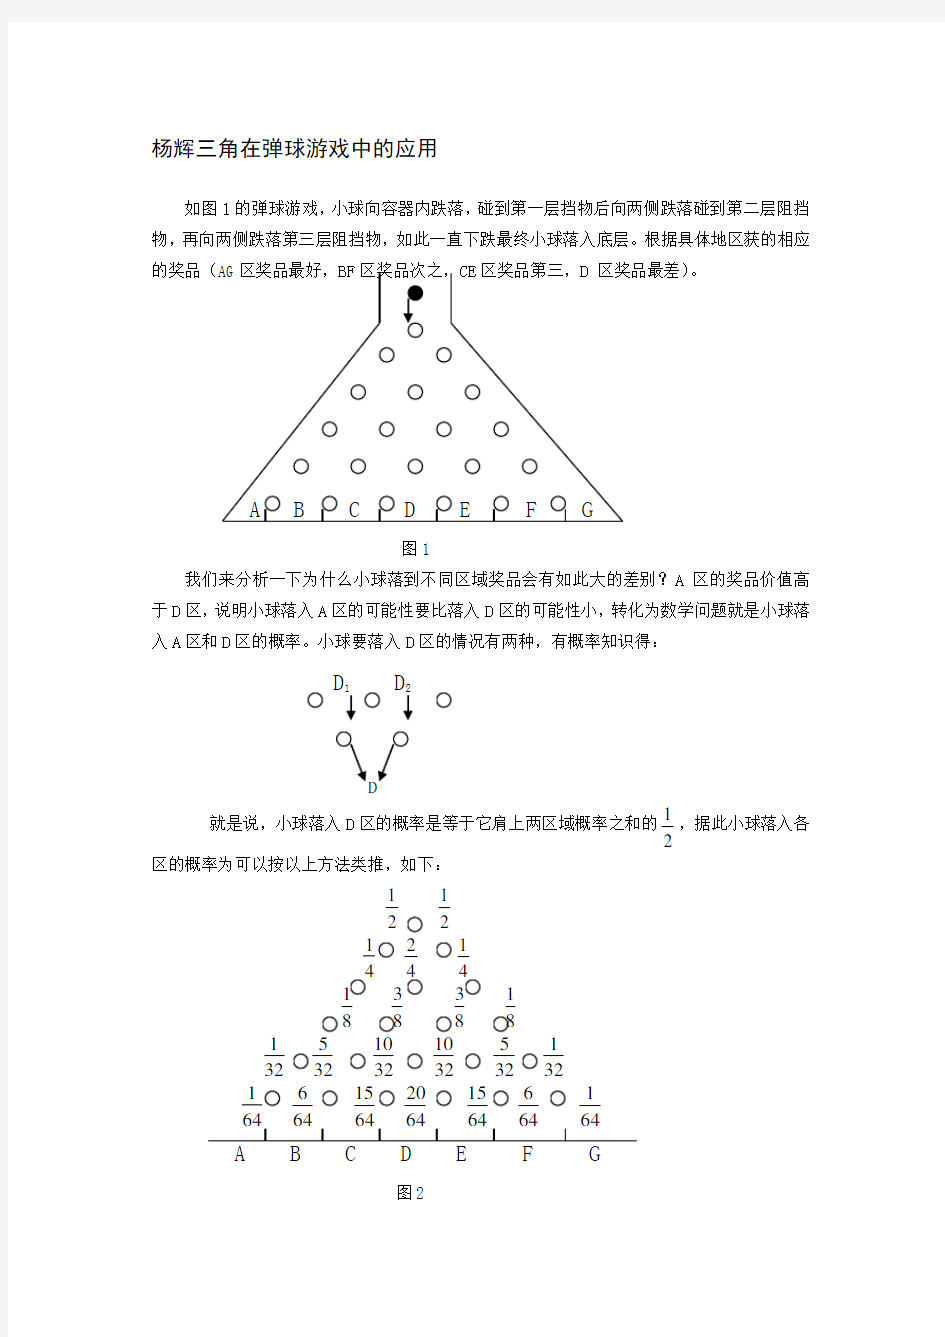 杨辉三角形的生活运用和规律